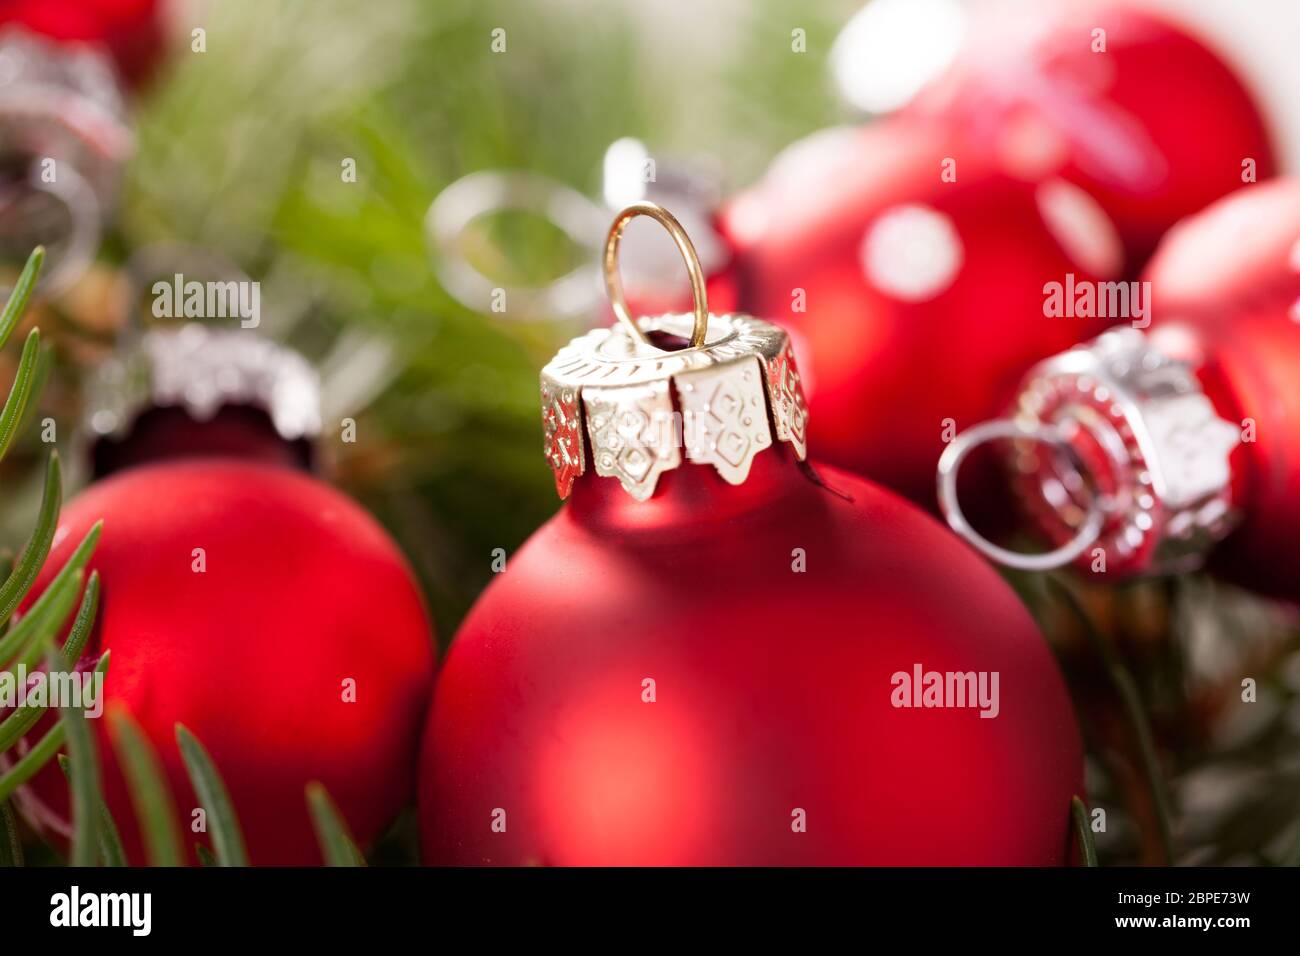 Schöne rote Weihnachtskugeln mit kleinen Weißen Punkten mit grünen Tannenzweigen auf einem Jutesack Stock Photo